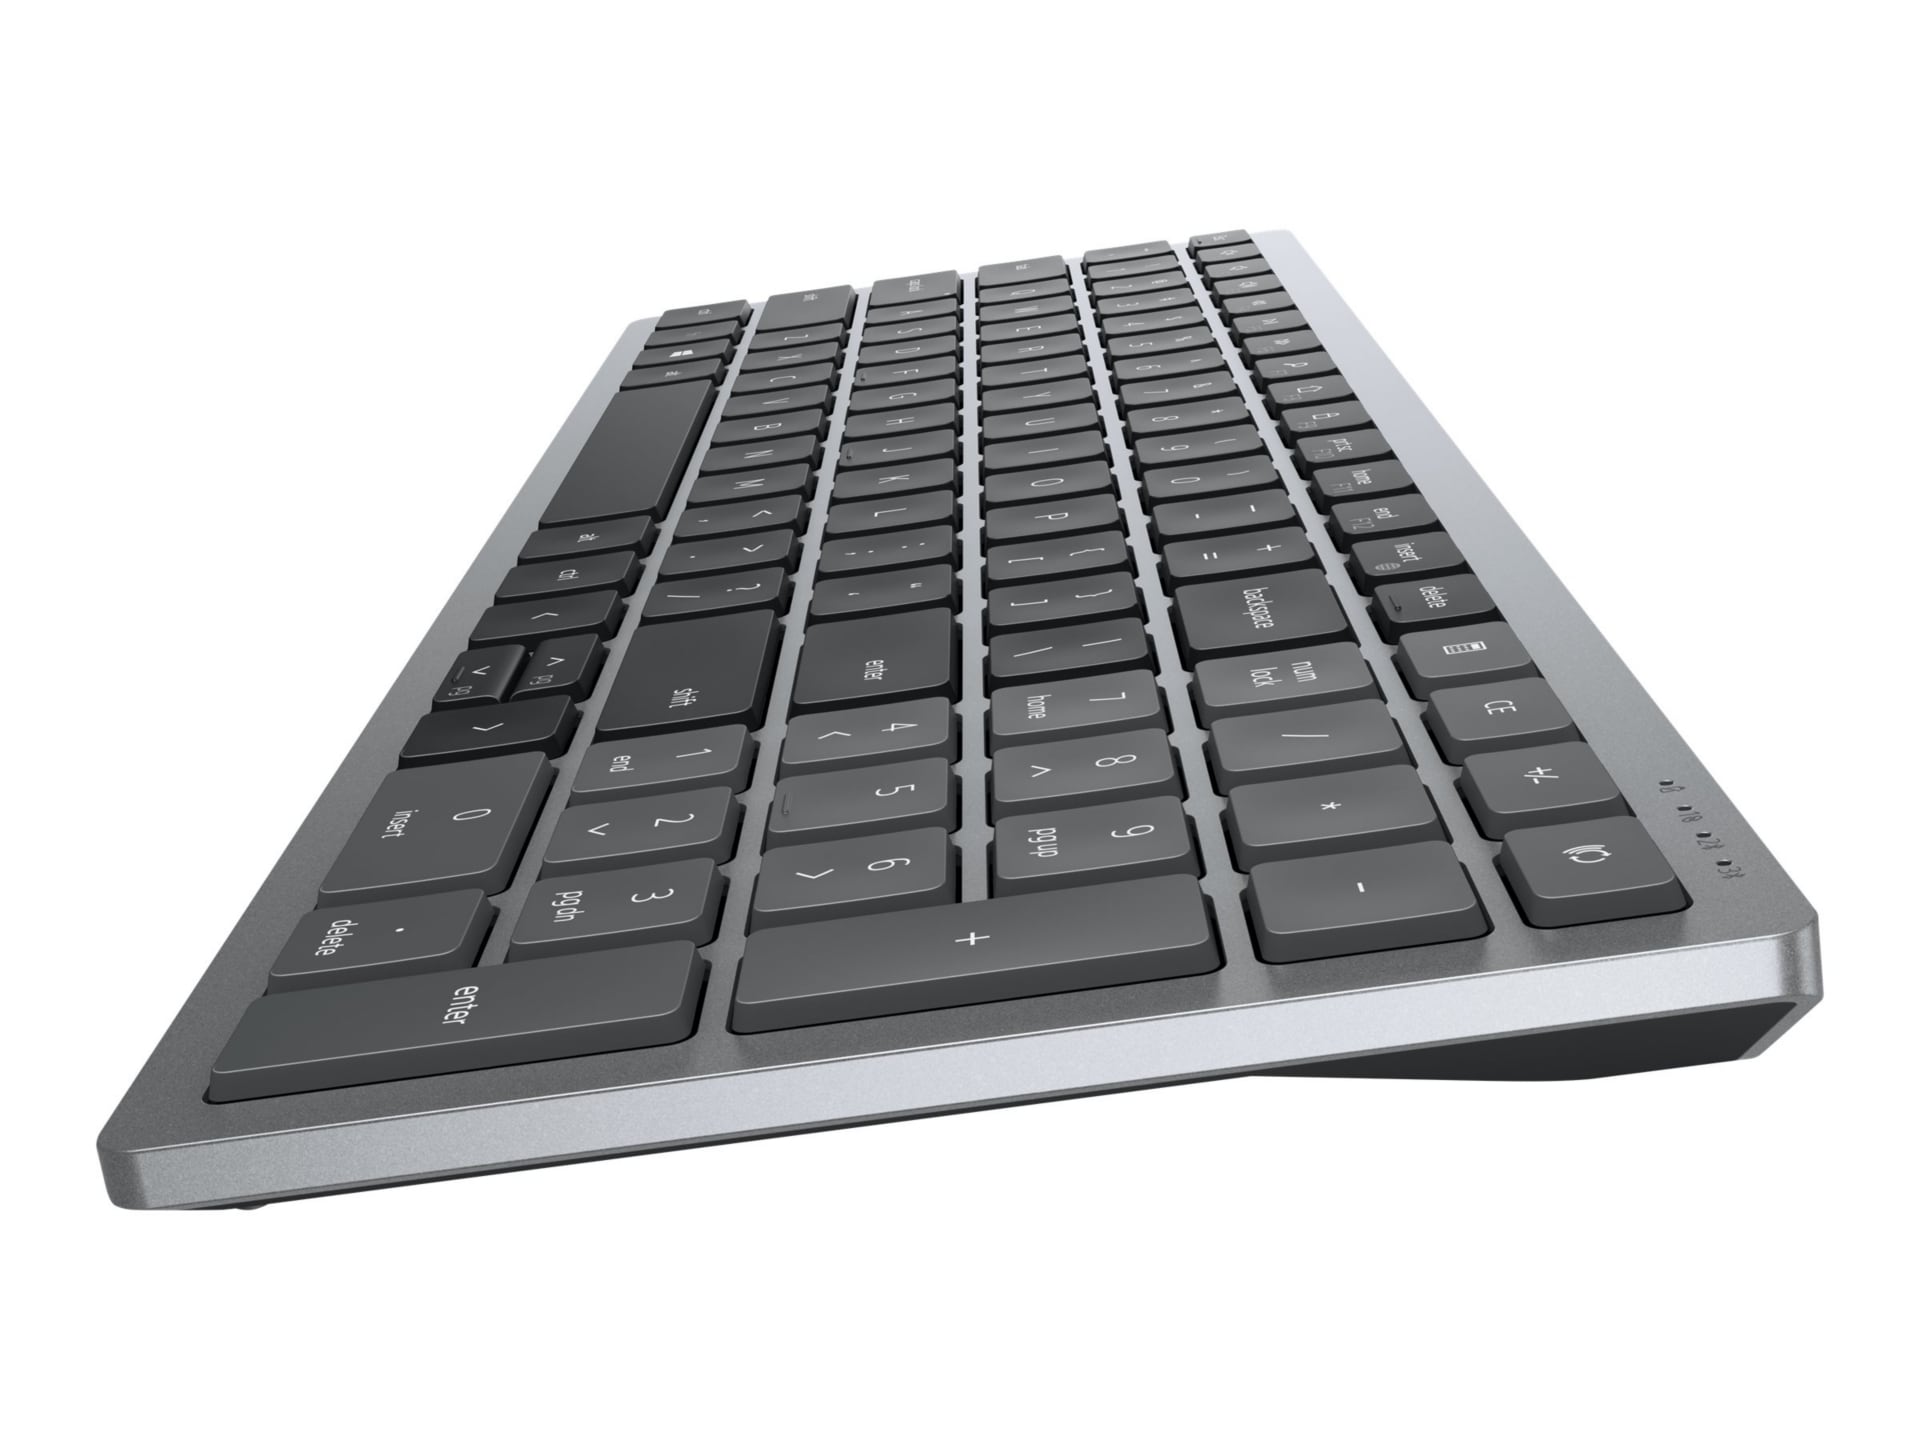 Dell Multi-Device KM7120W - ensemble clavier et souris - gris titan Périphérique d'entrée